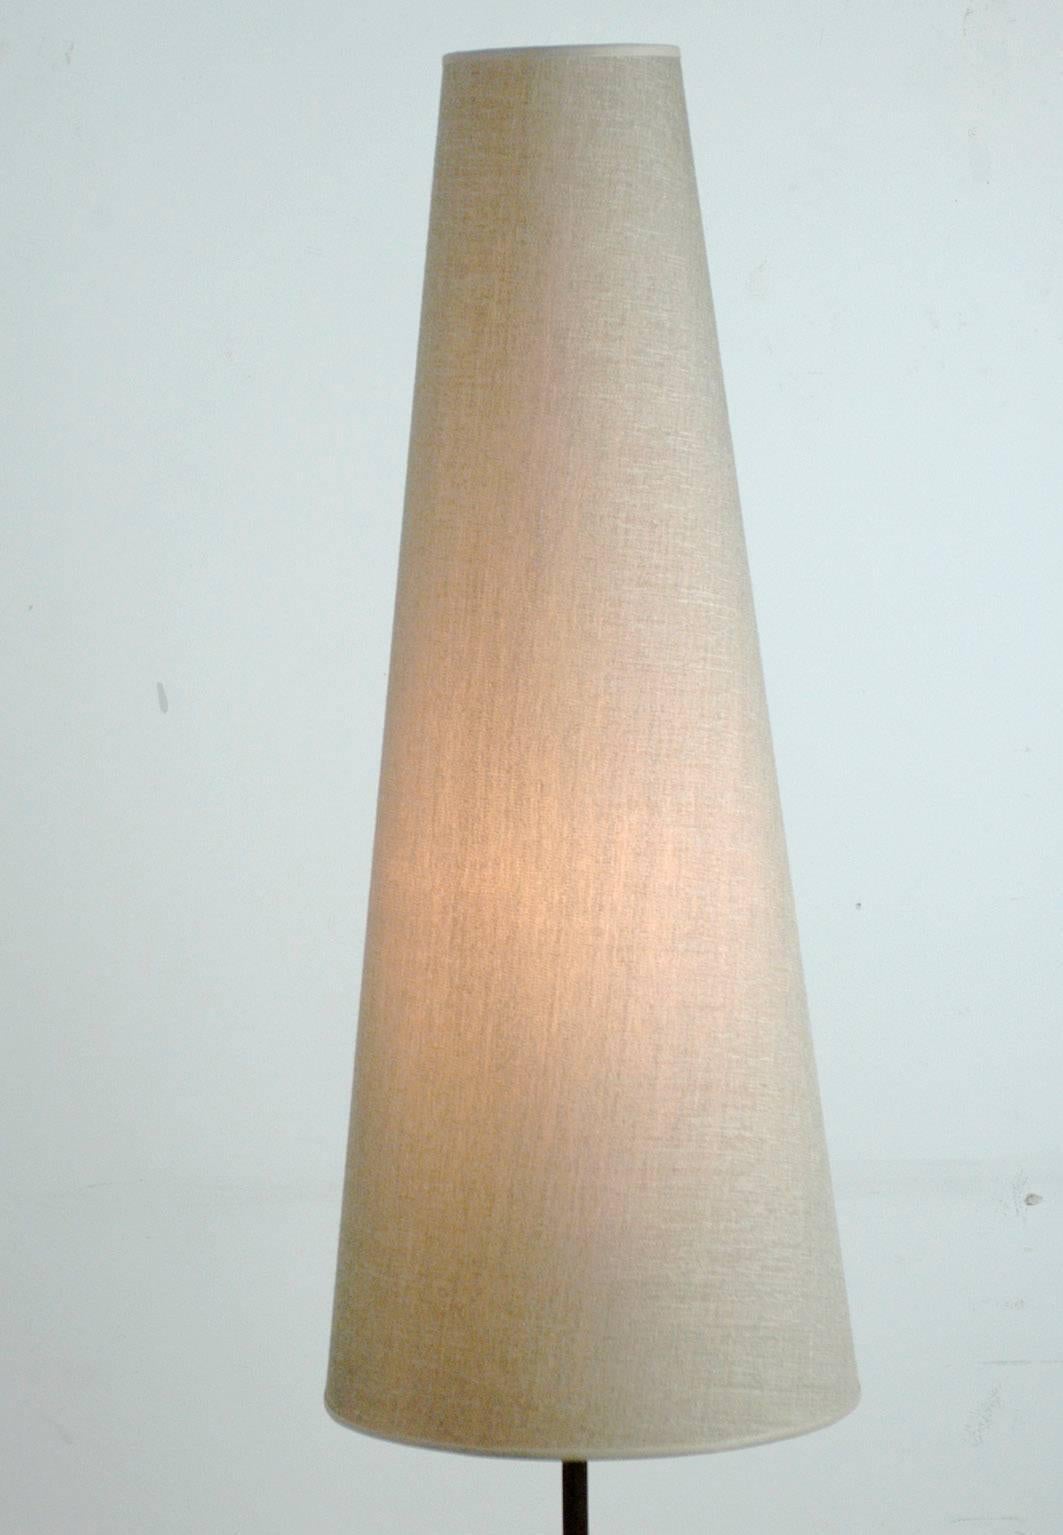 Austrian Modernist Brass and Teak Floor Lamp in the Style of J.T. Kalmar (Österreichisch)